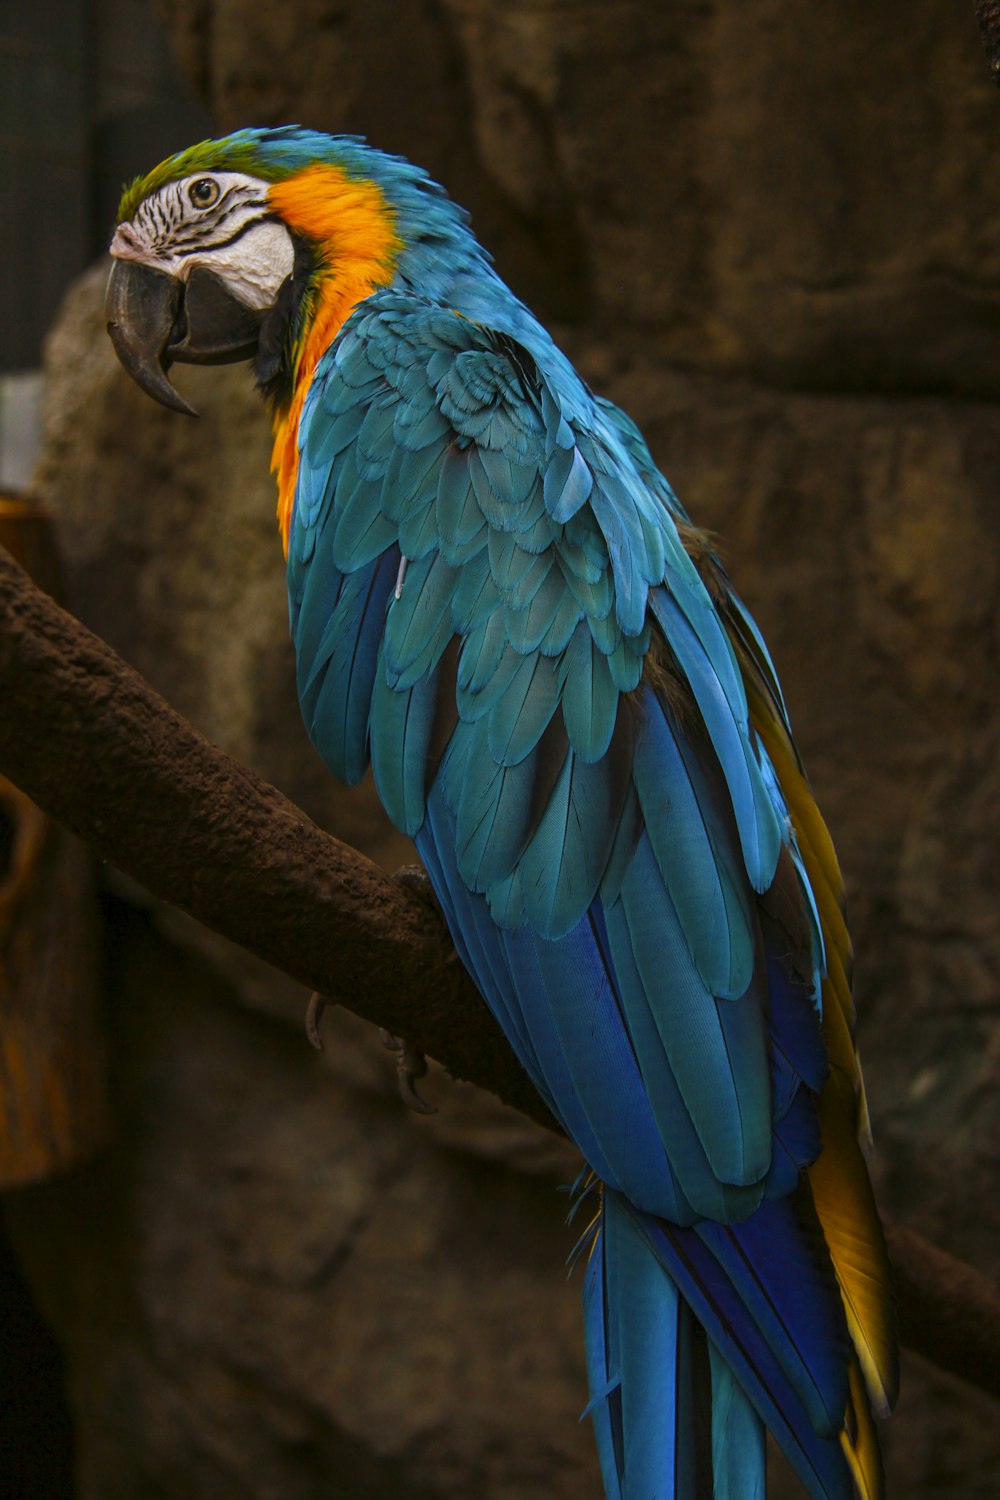 fotografia em close-up de papagaio multicolorido